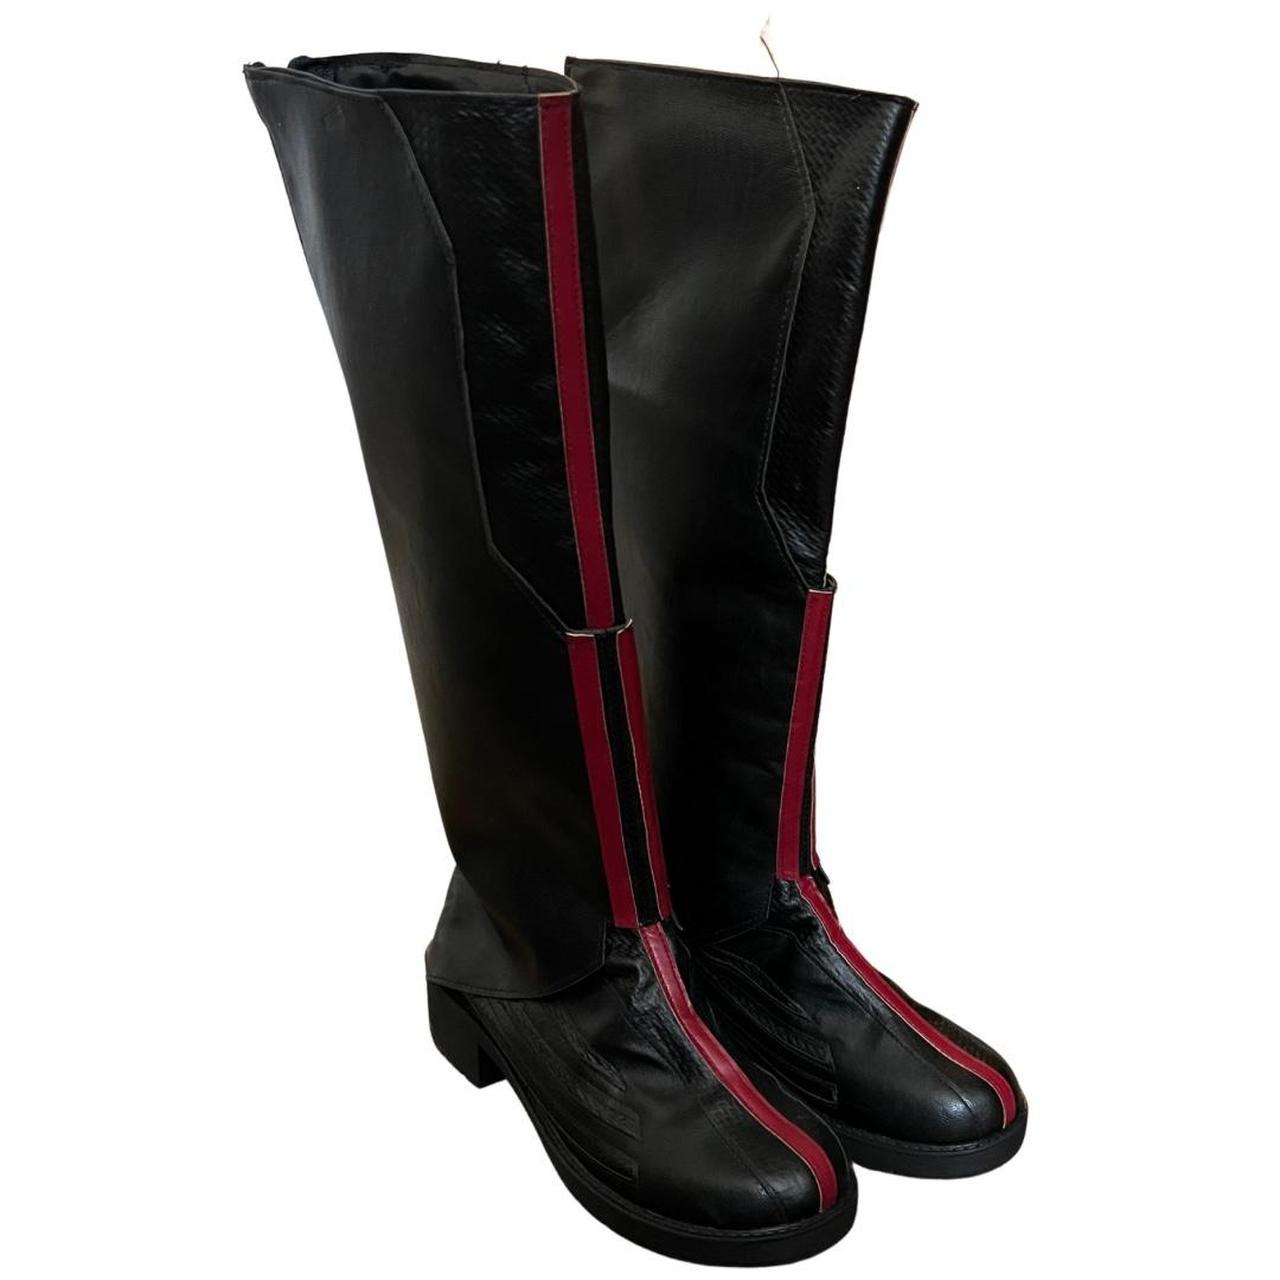 Louis Vuitton “Rhapsody High Boots”, retail - Depop